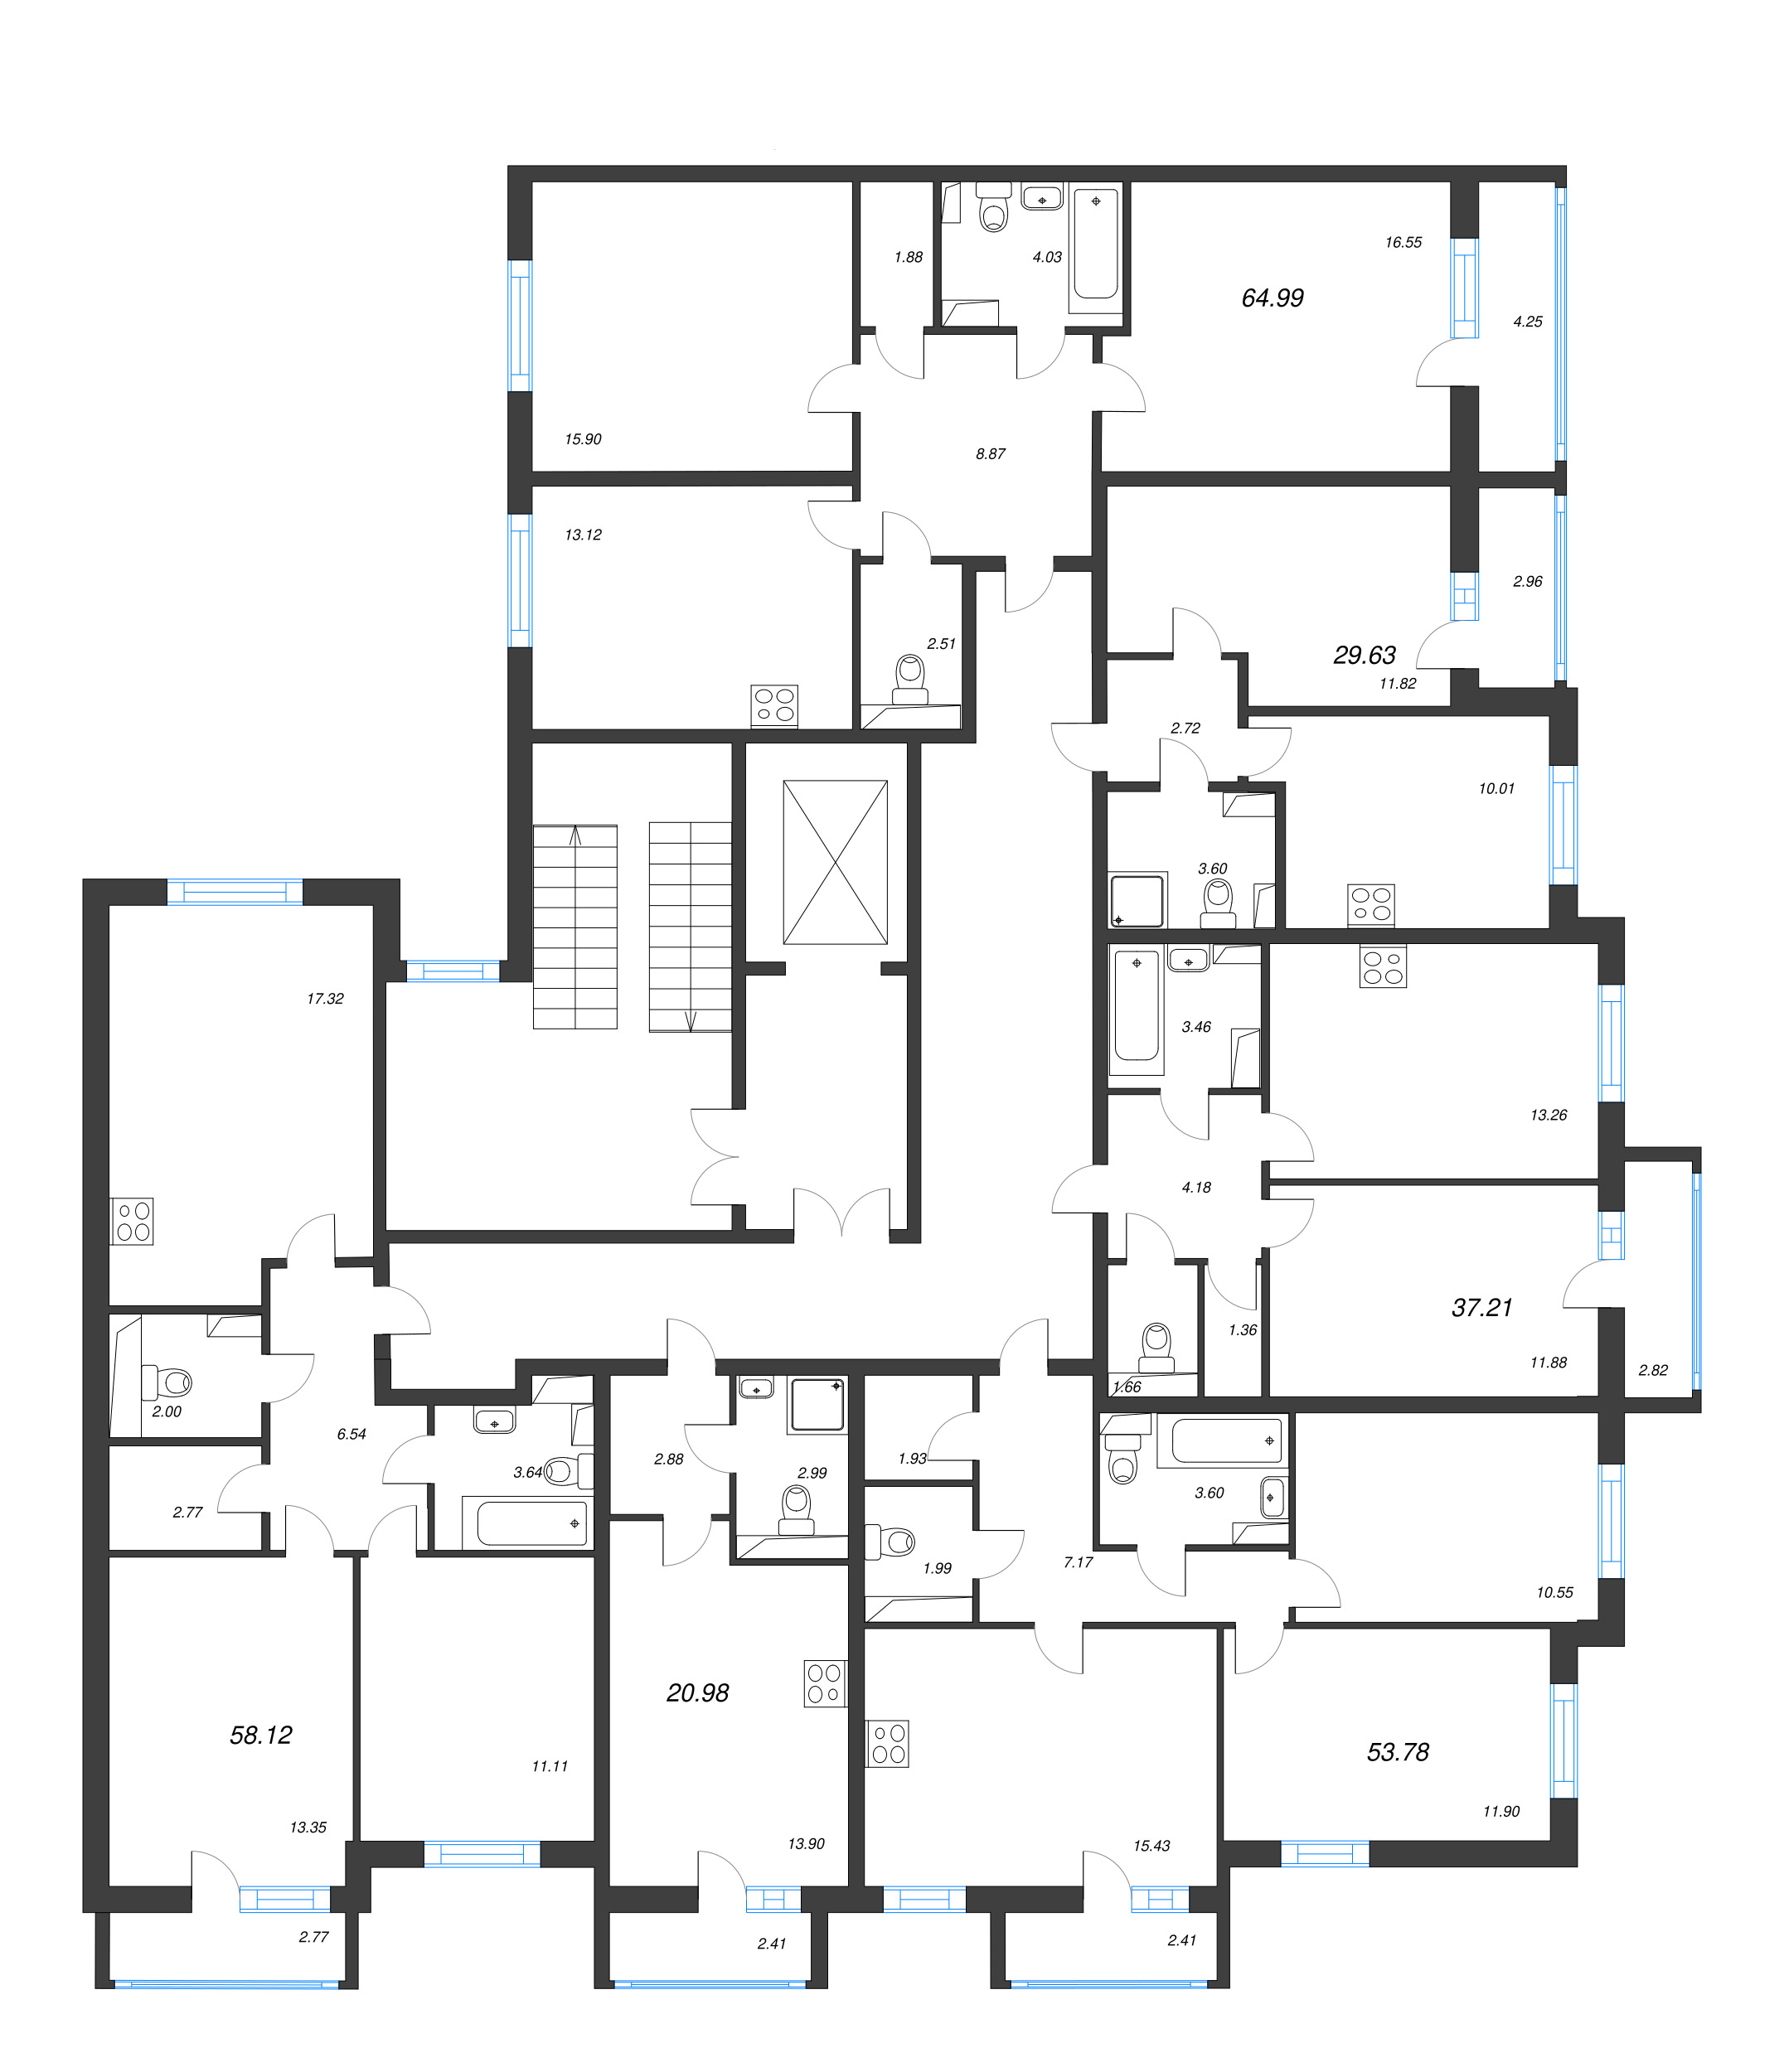 Квартира-студия, 20.98 м² в ЖК "Кинопарк" - планировка этажа